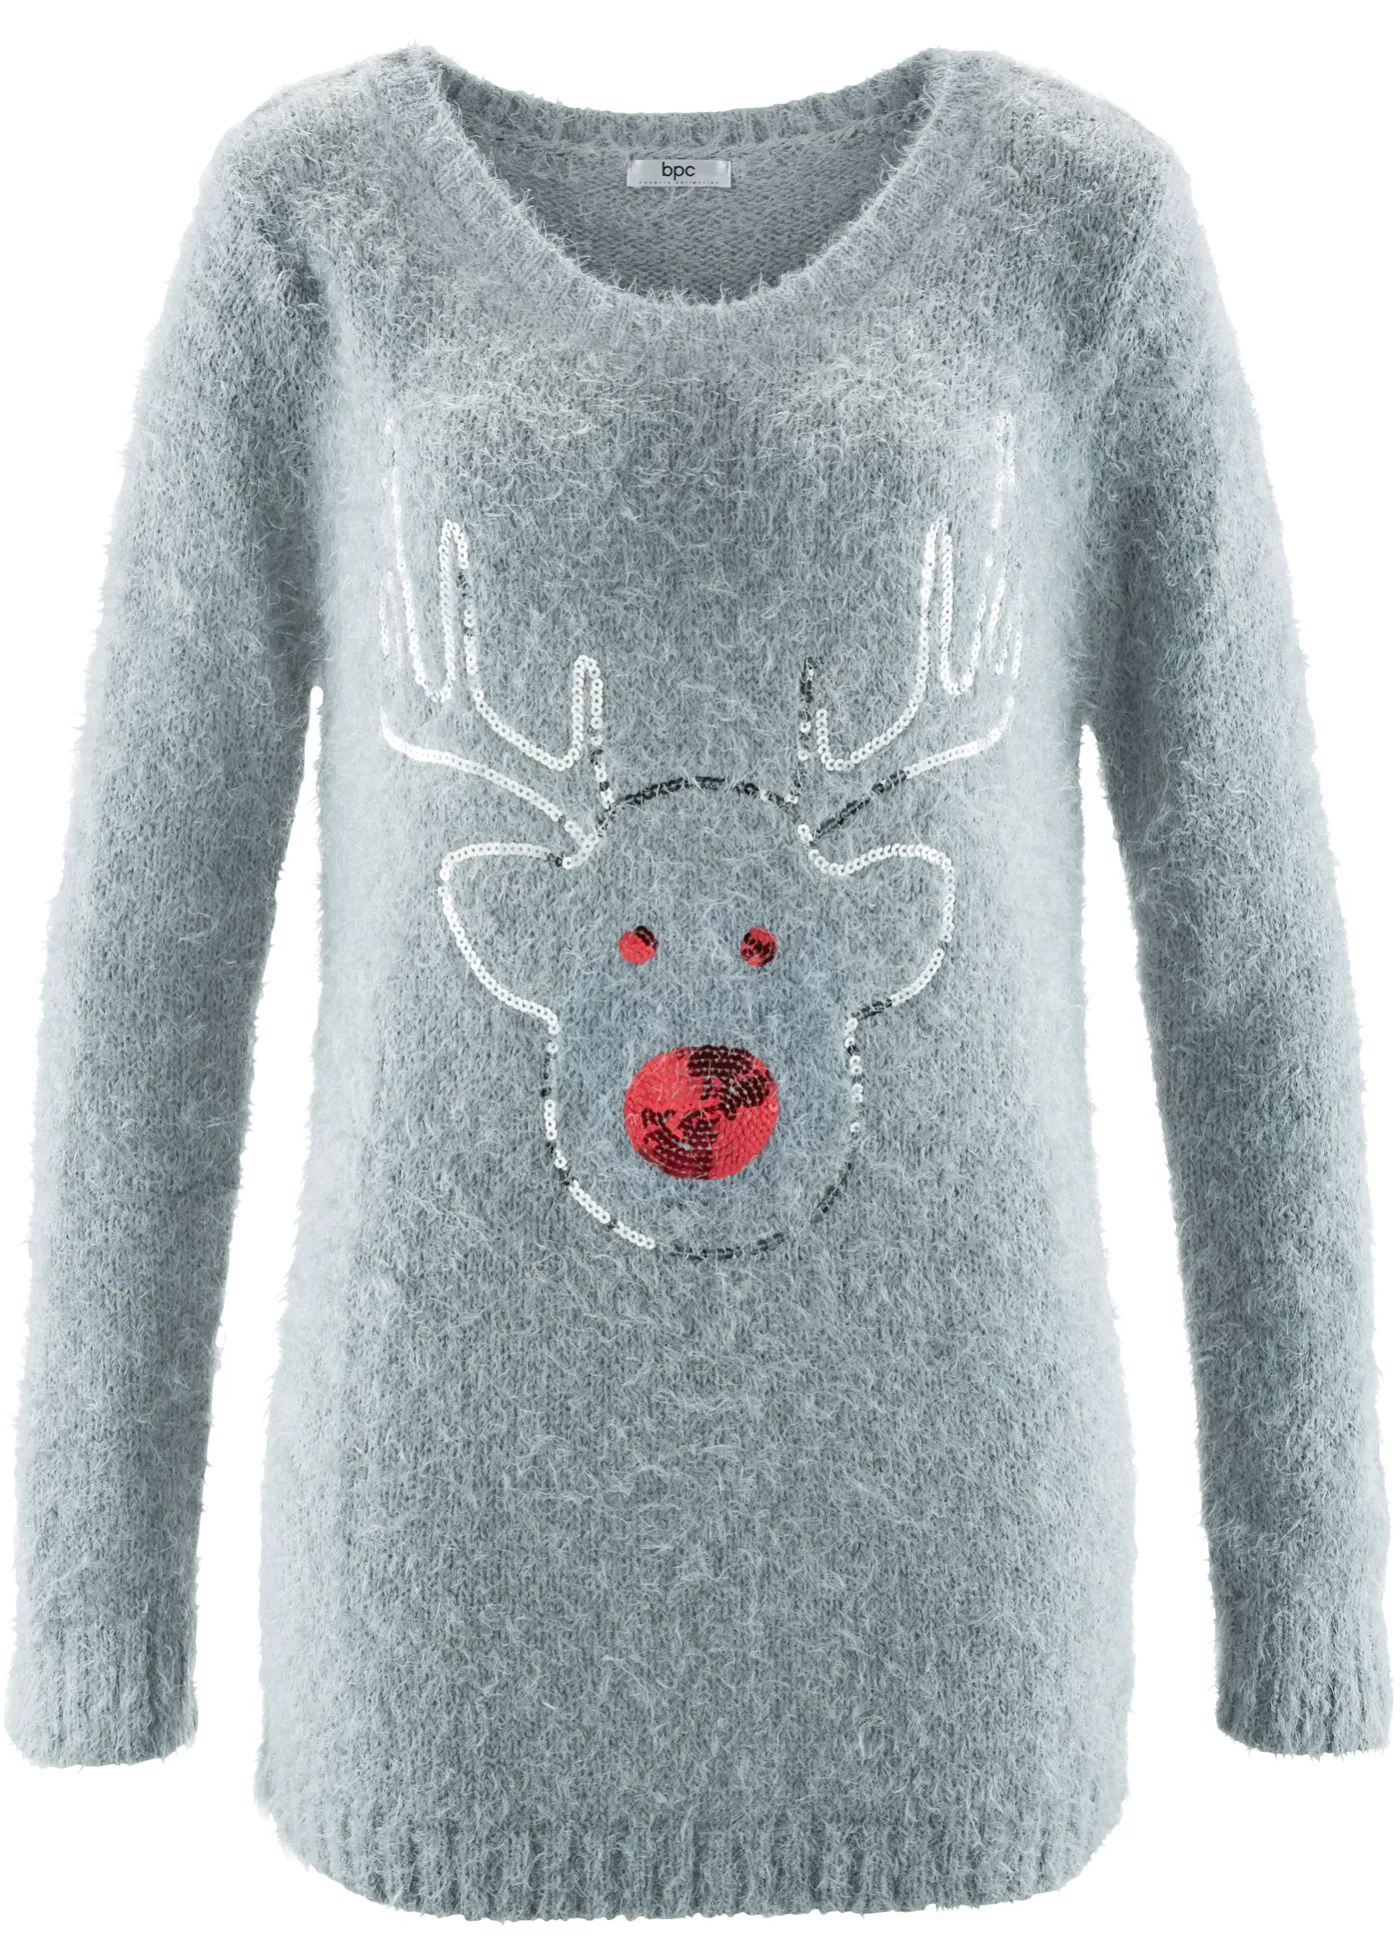 Maglione natalizio con renna di paillettes (Argento) - bpc bonprix collection